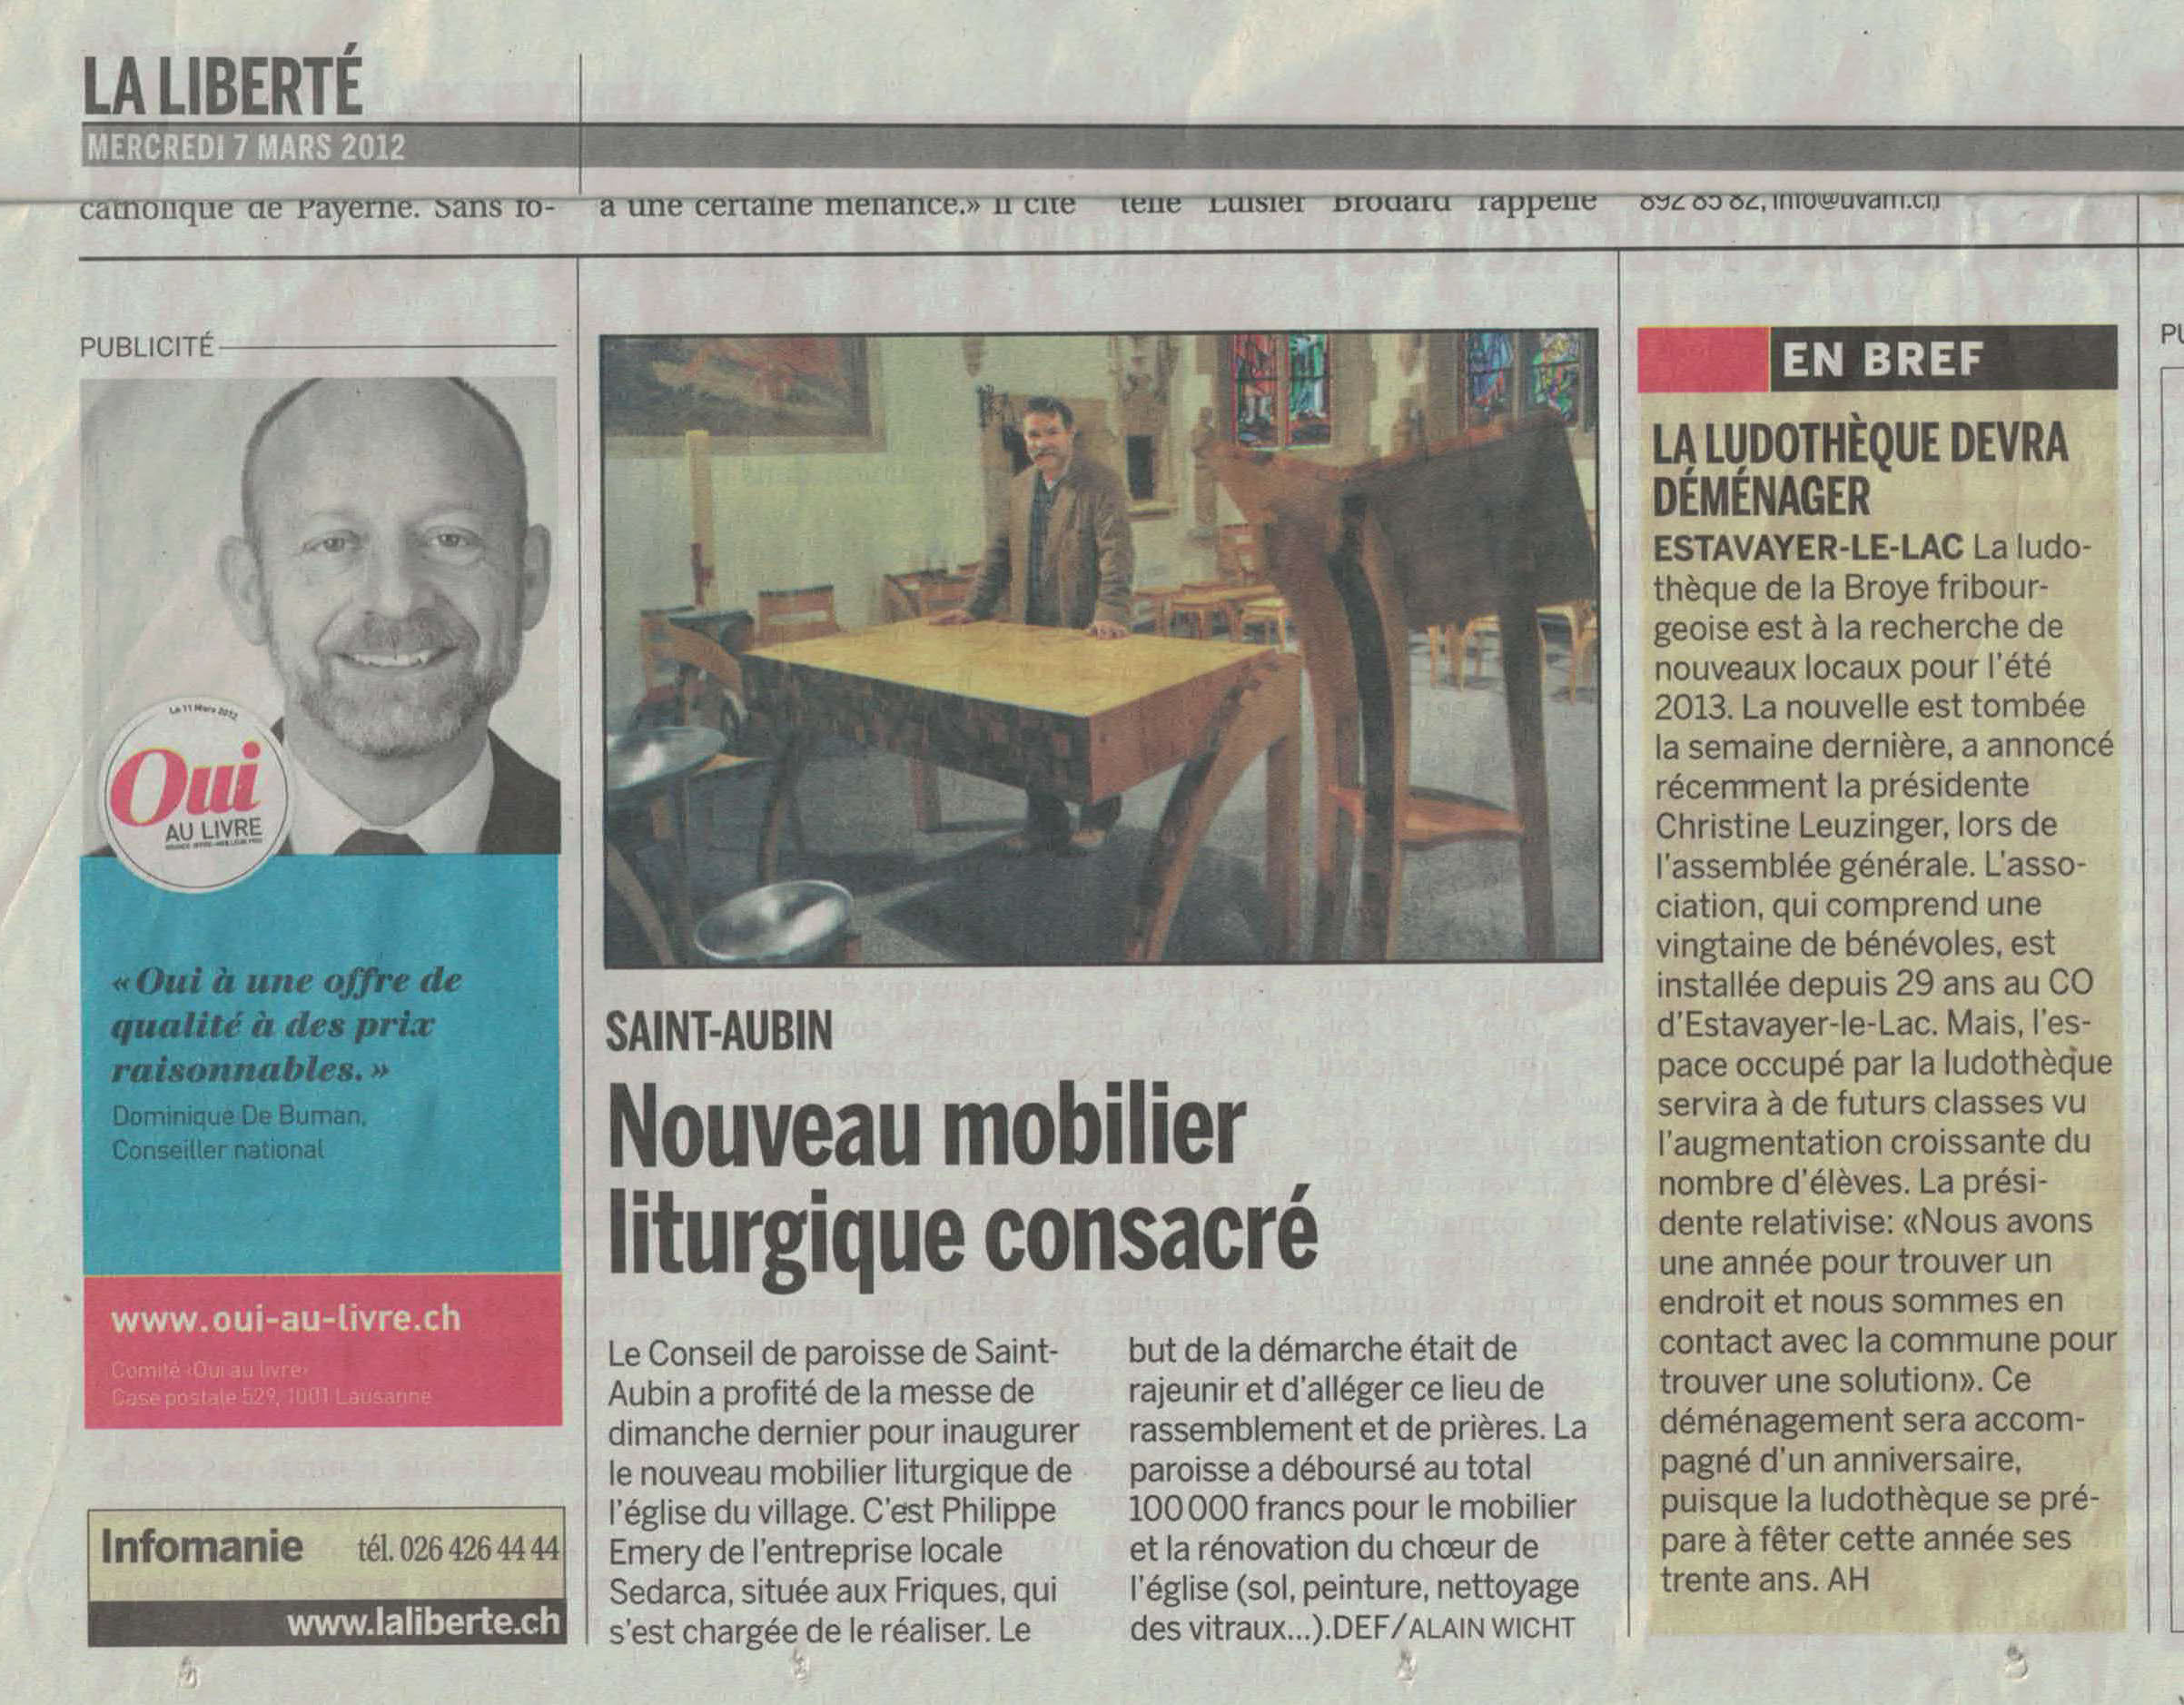 article du 3 mars 2012 du journal La Liberté